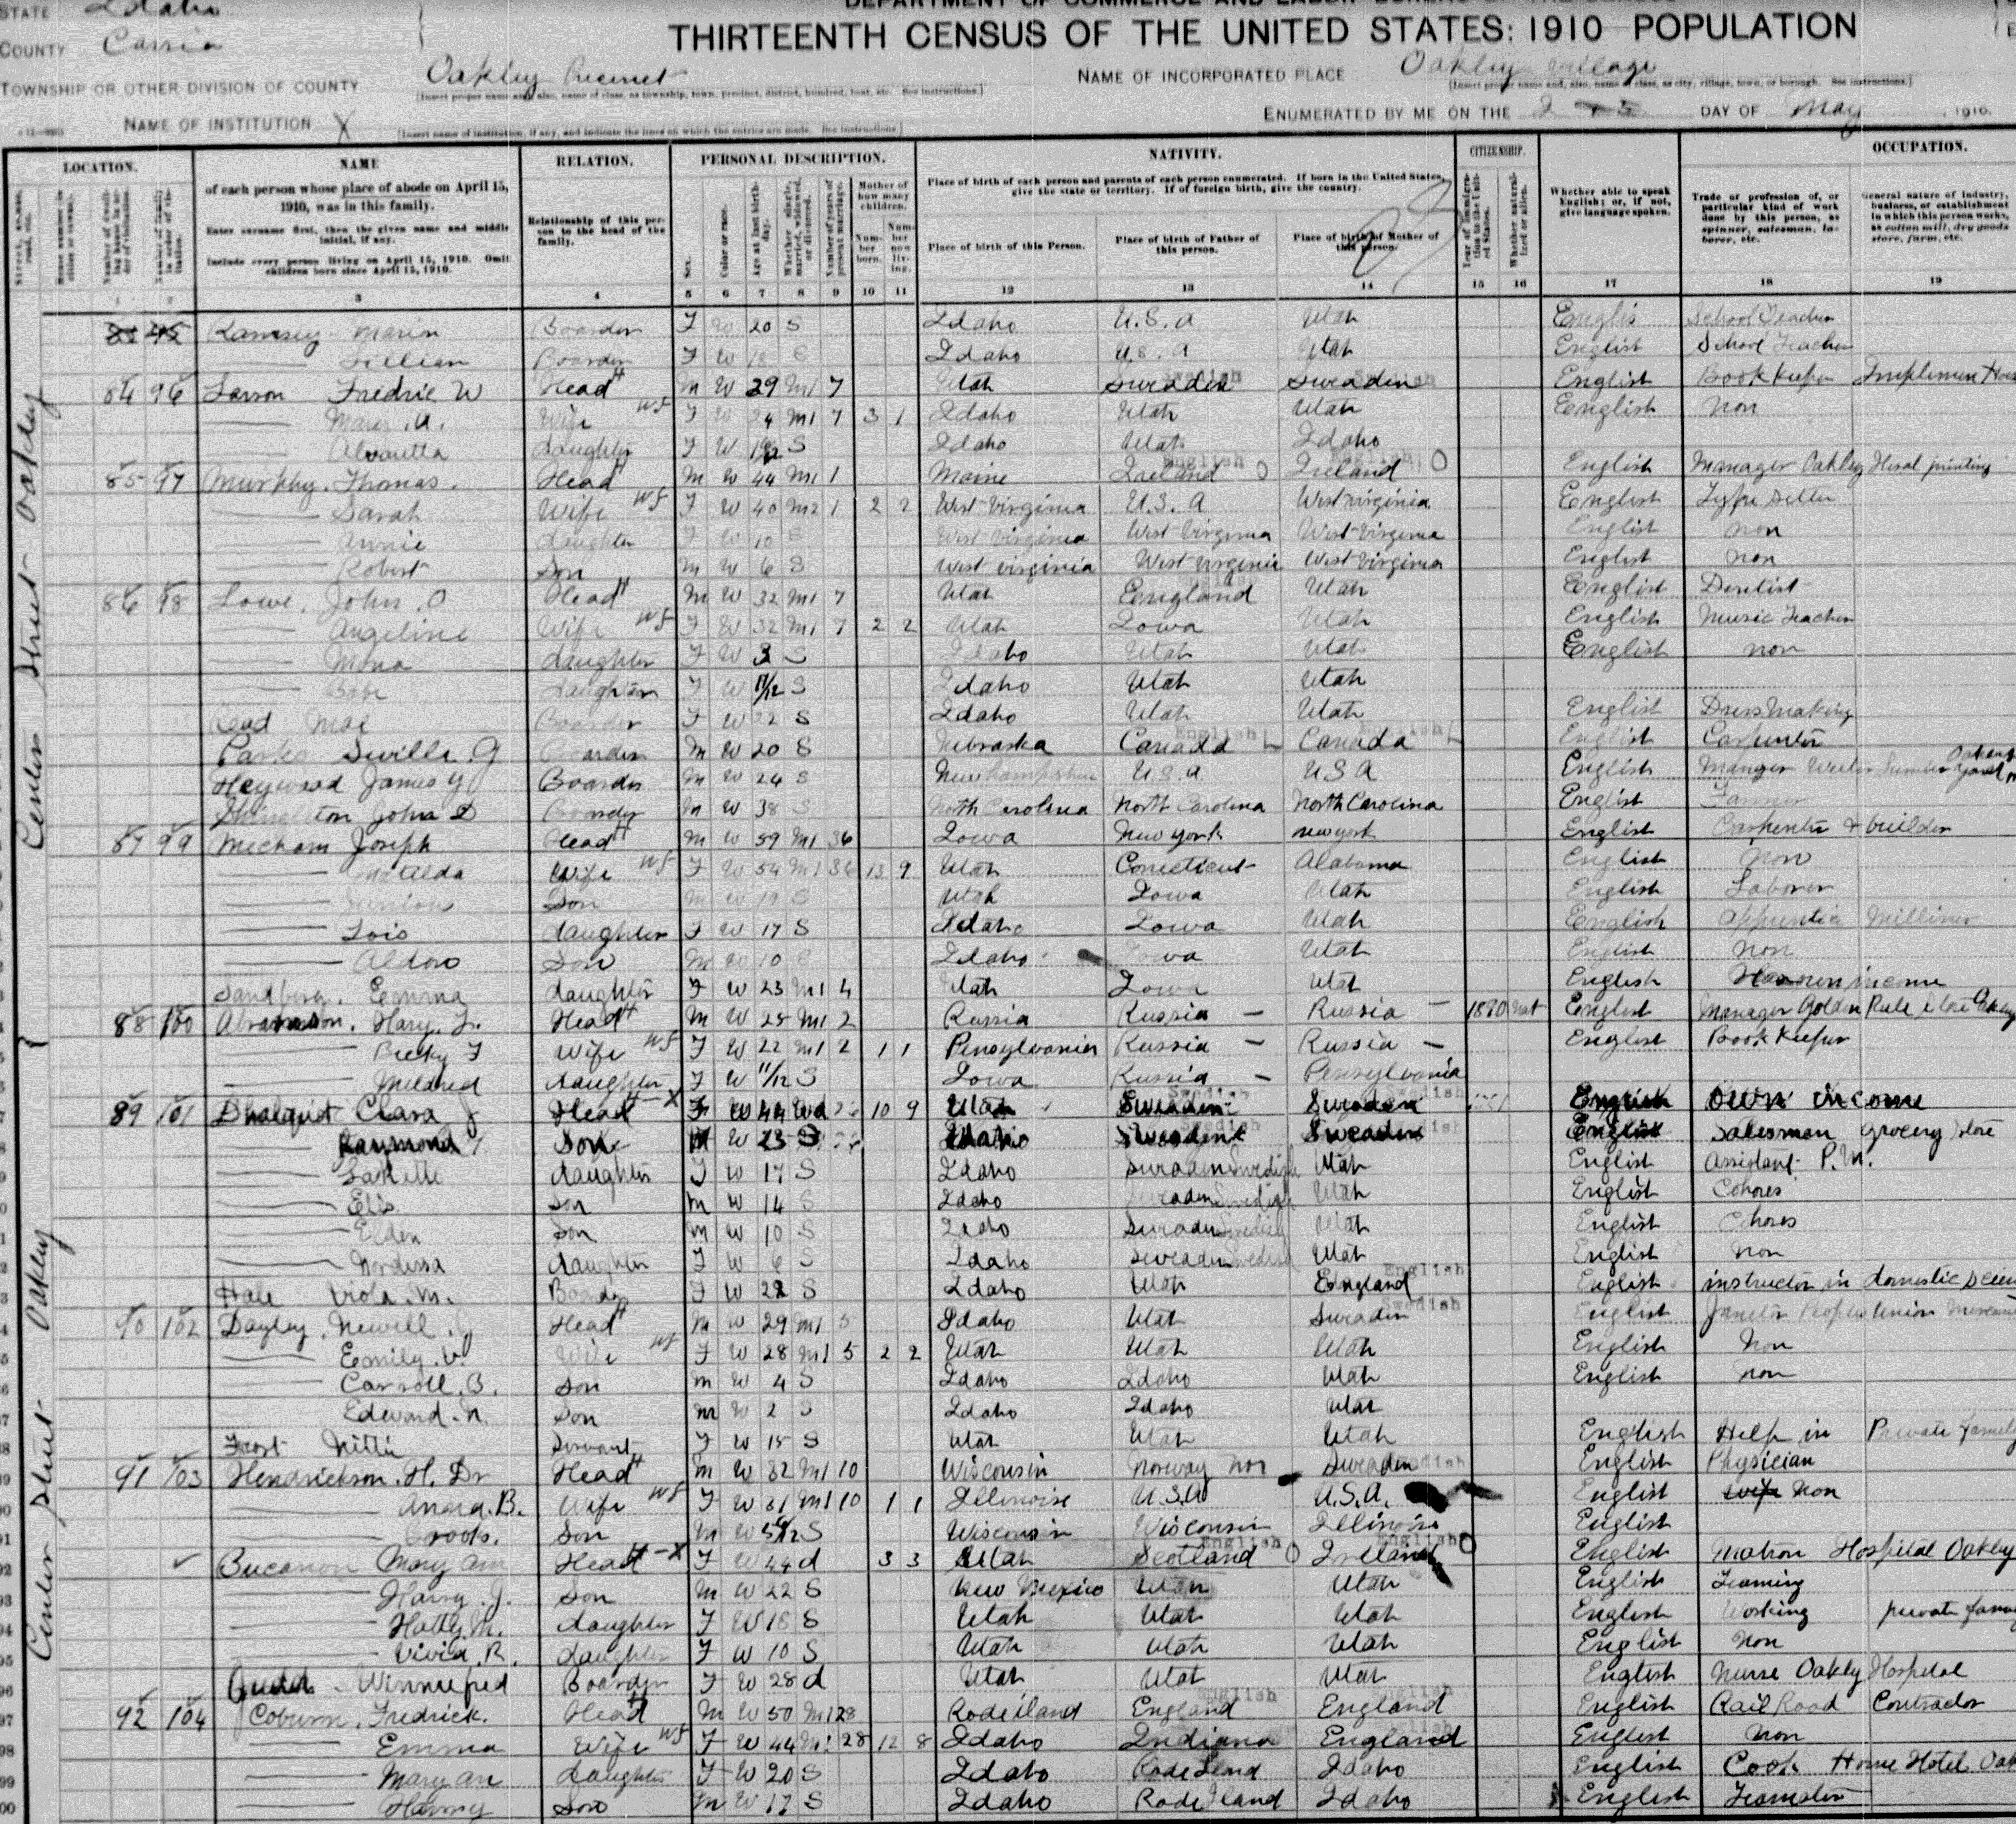 1910 U.S. Census Record-Frederick William Larson and Mary Alice Tolman